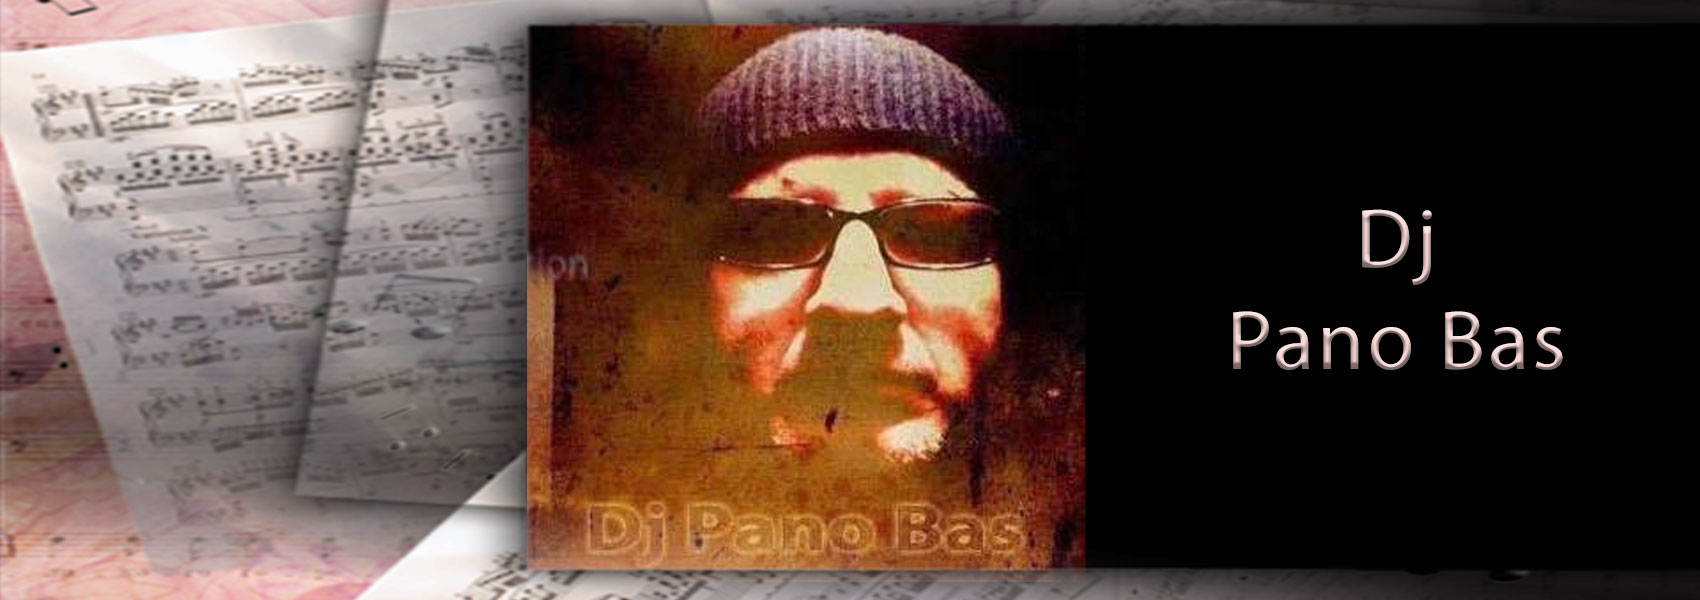 DJ PANO BAS